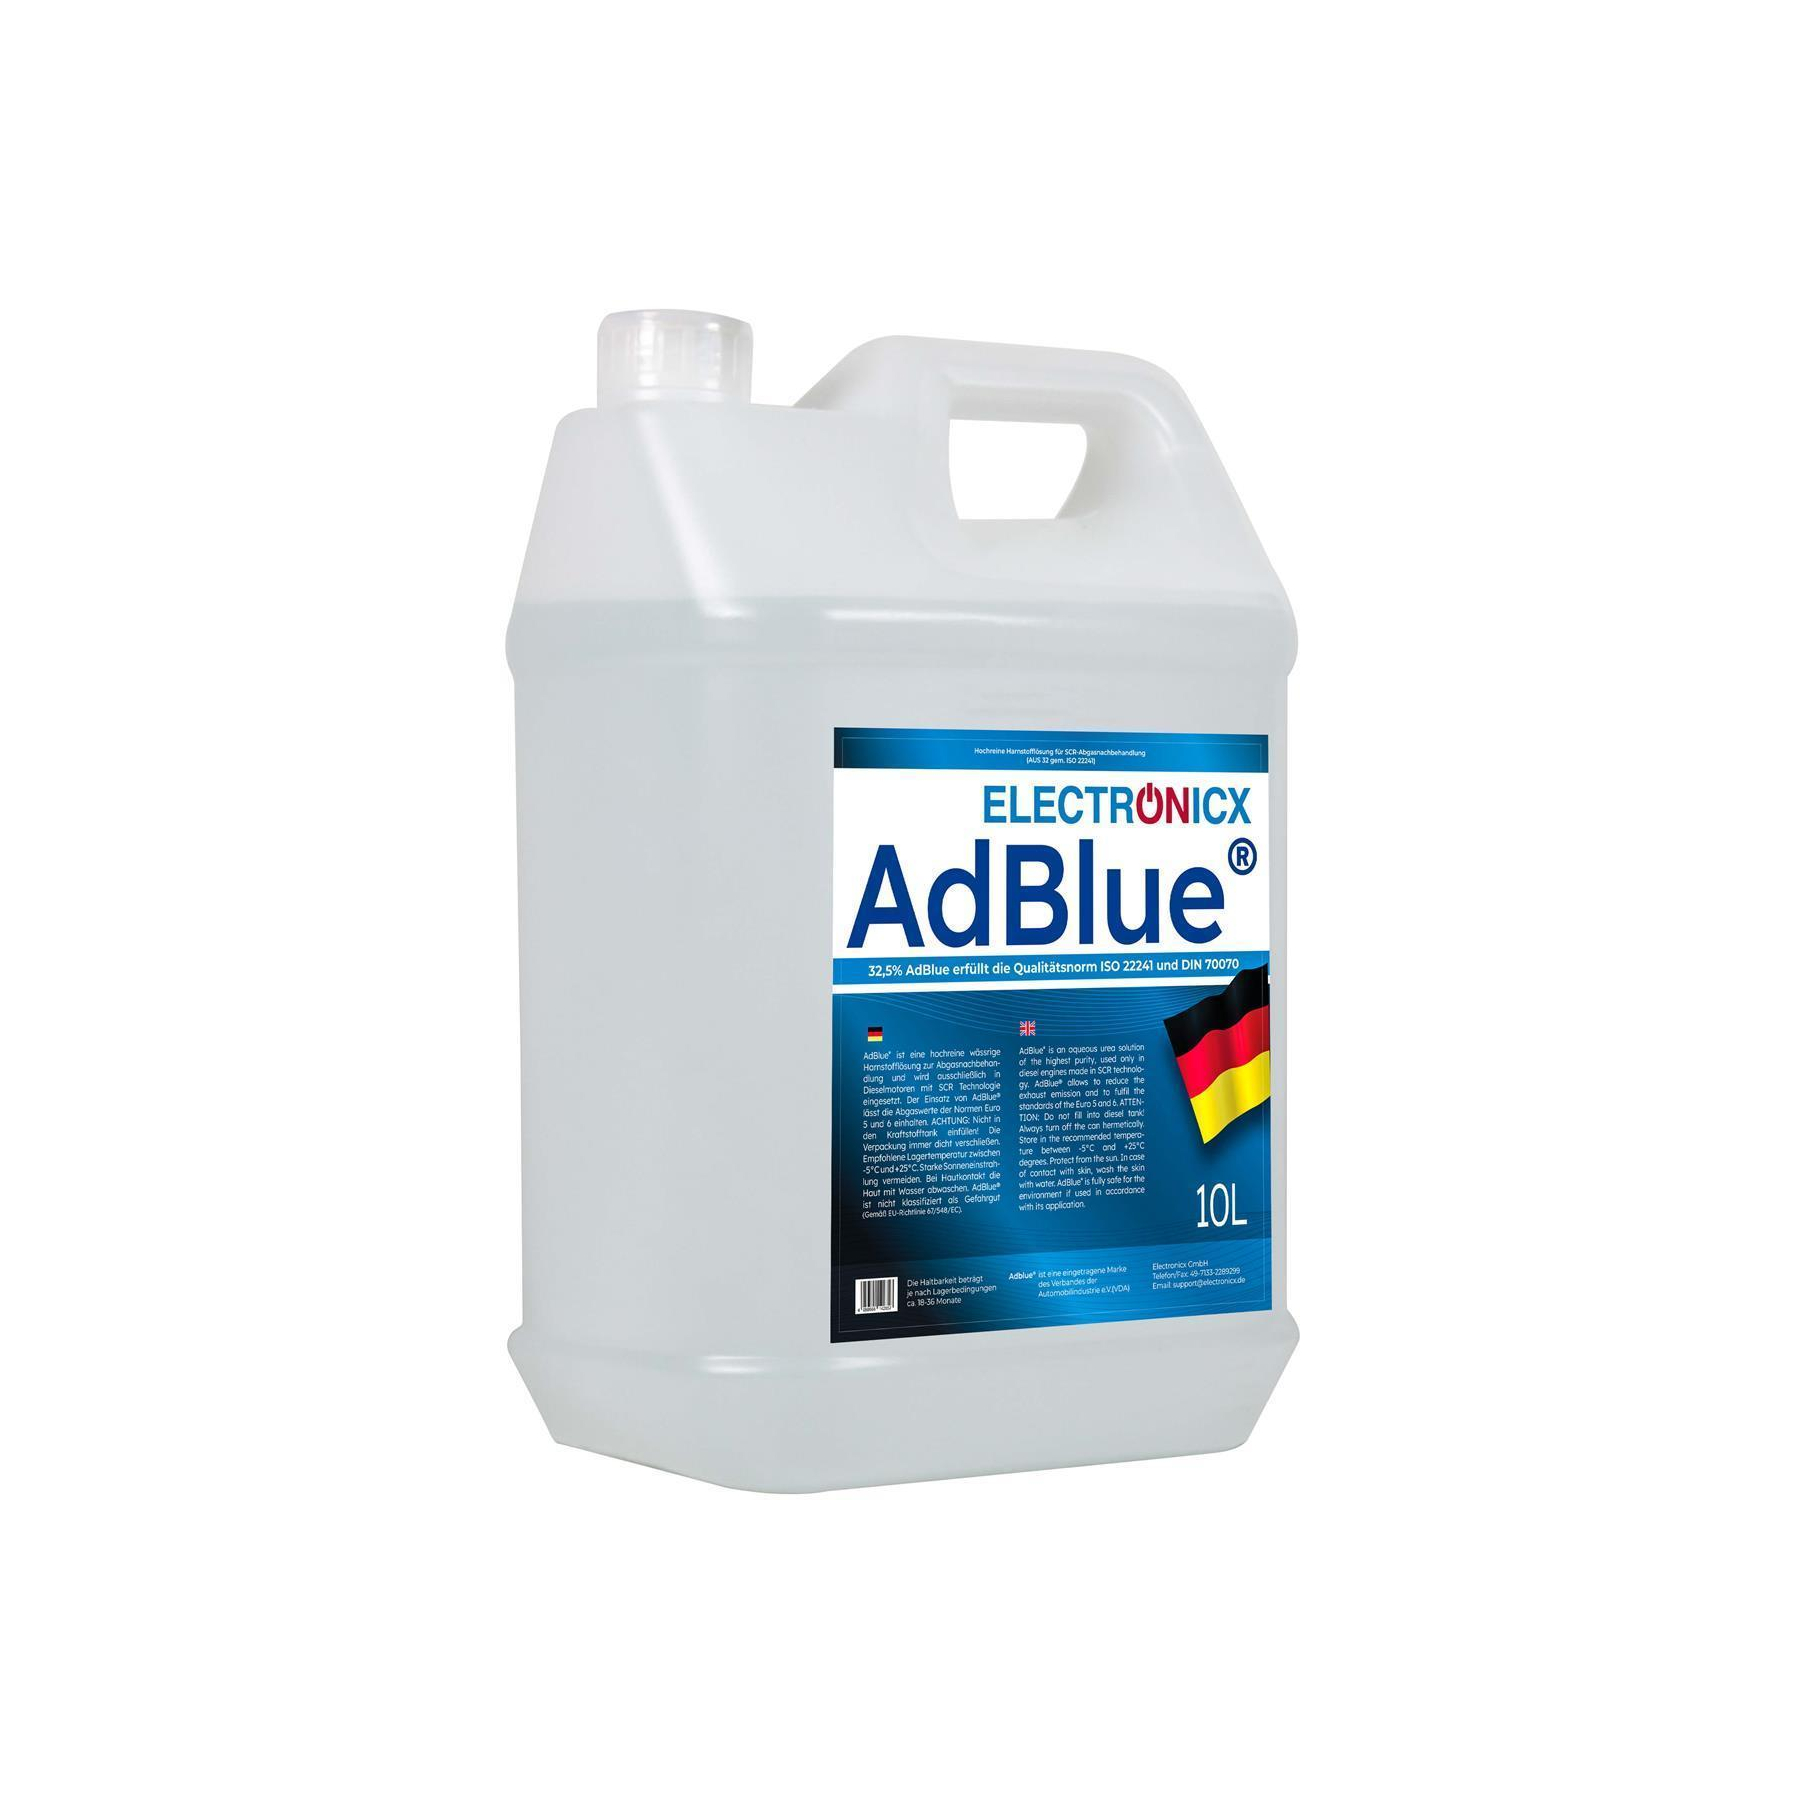 Adblue ad Blue 10 Liter Kanister mit einfüllhilfe